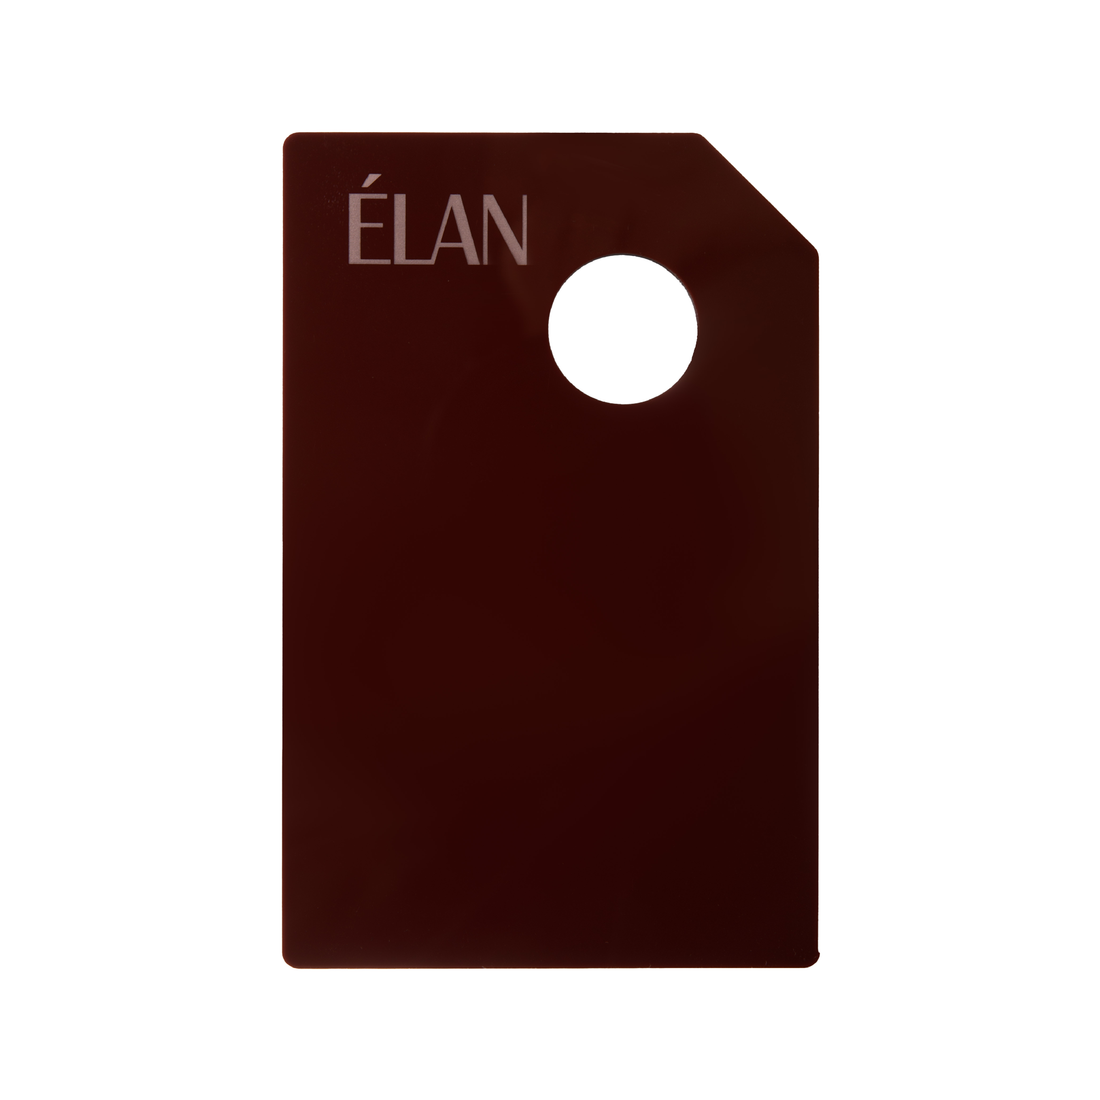 ÉLAN - Mixing palette